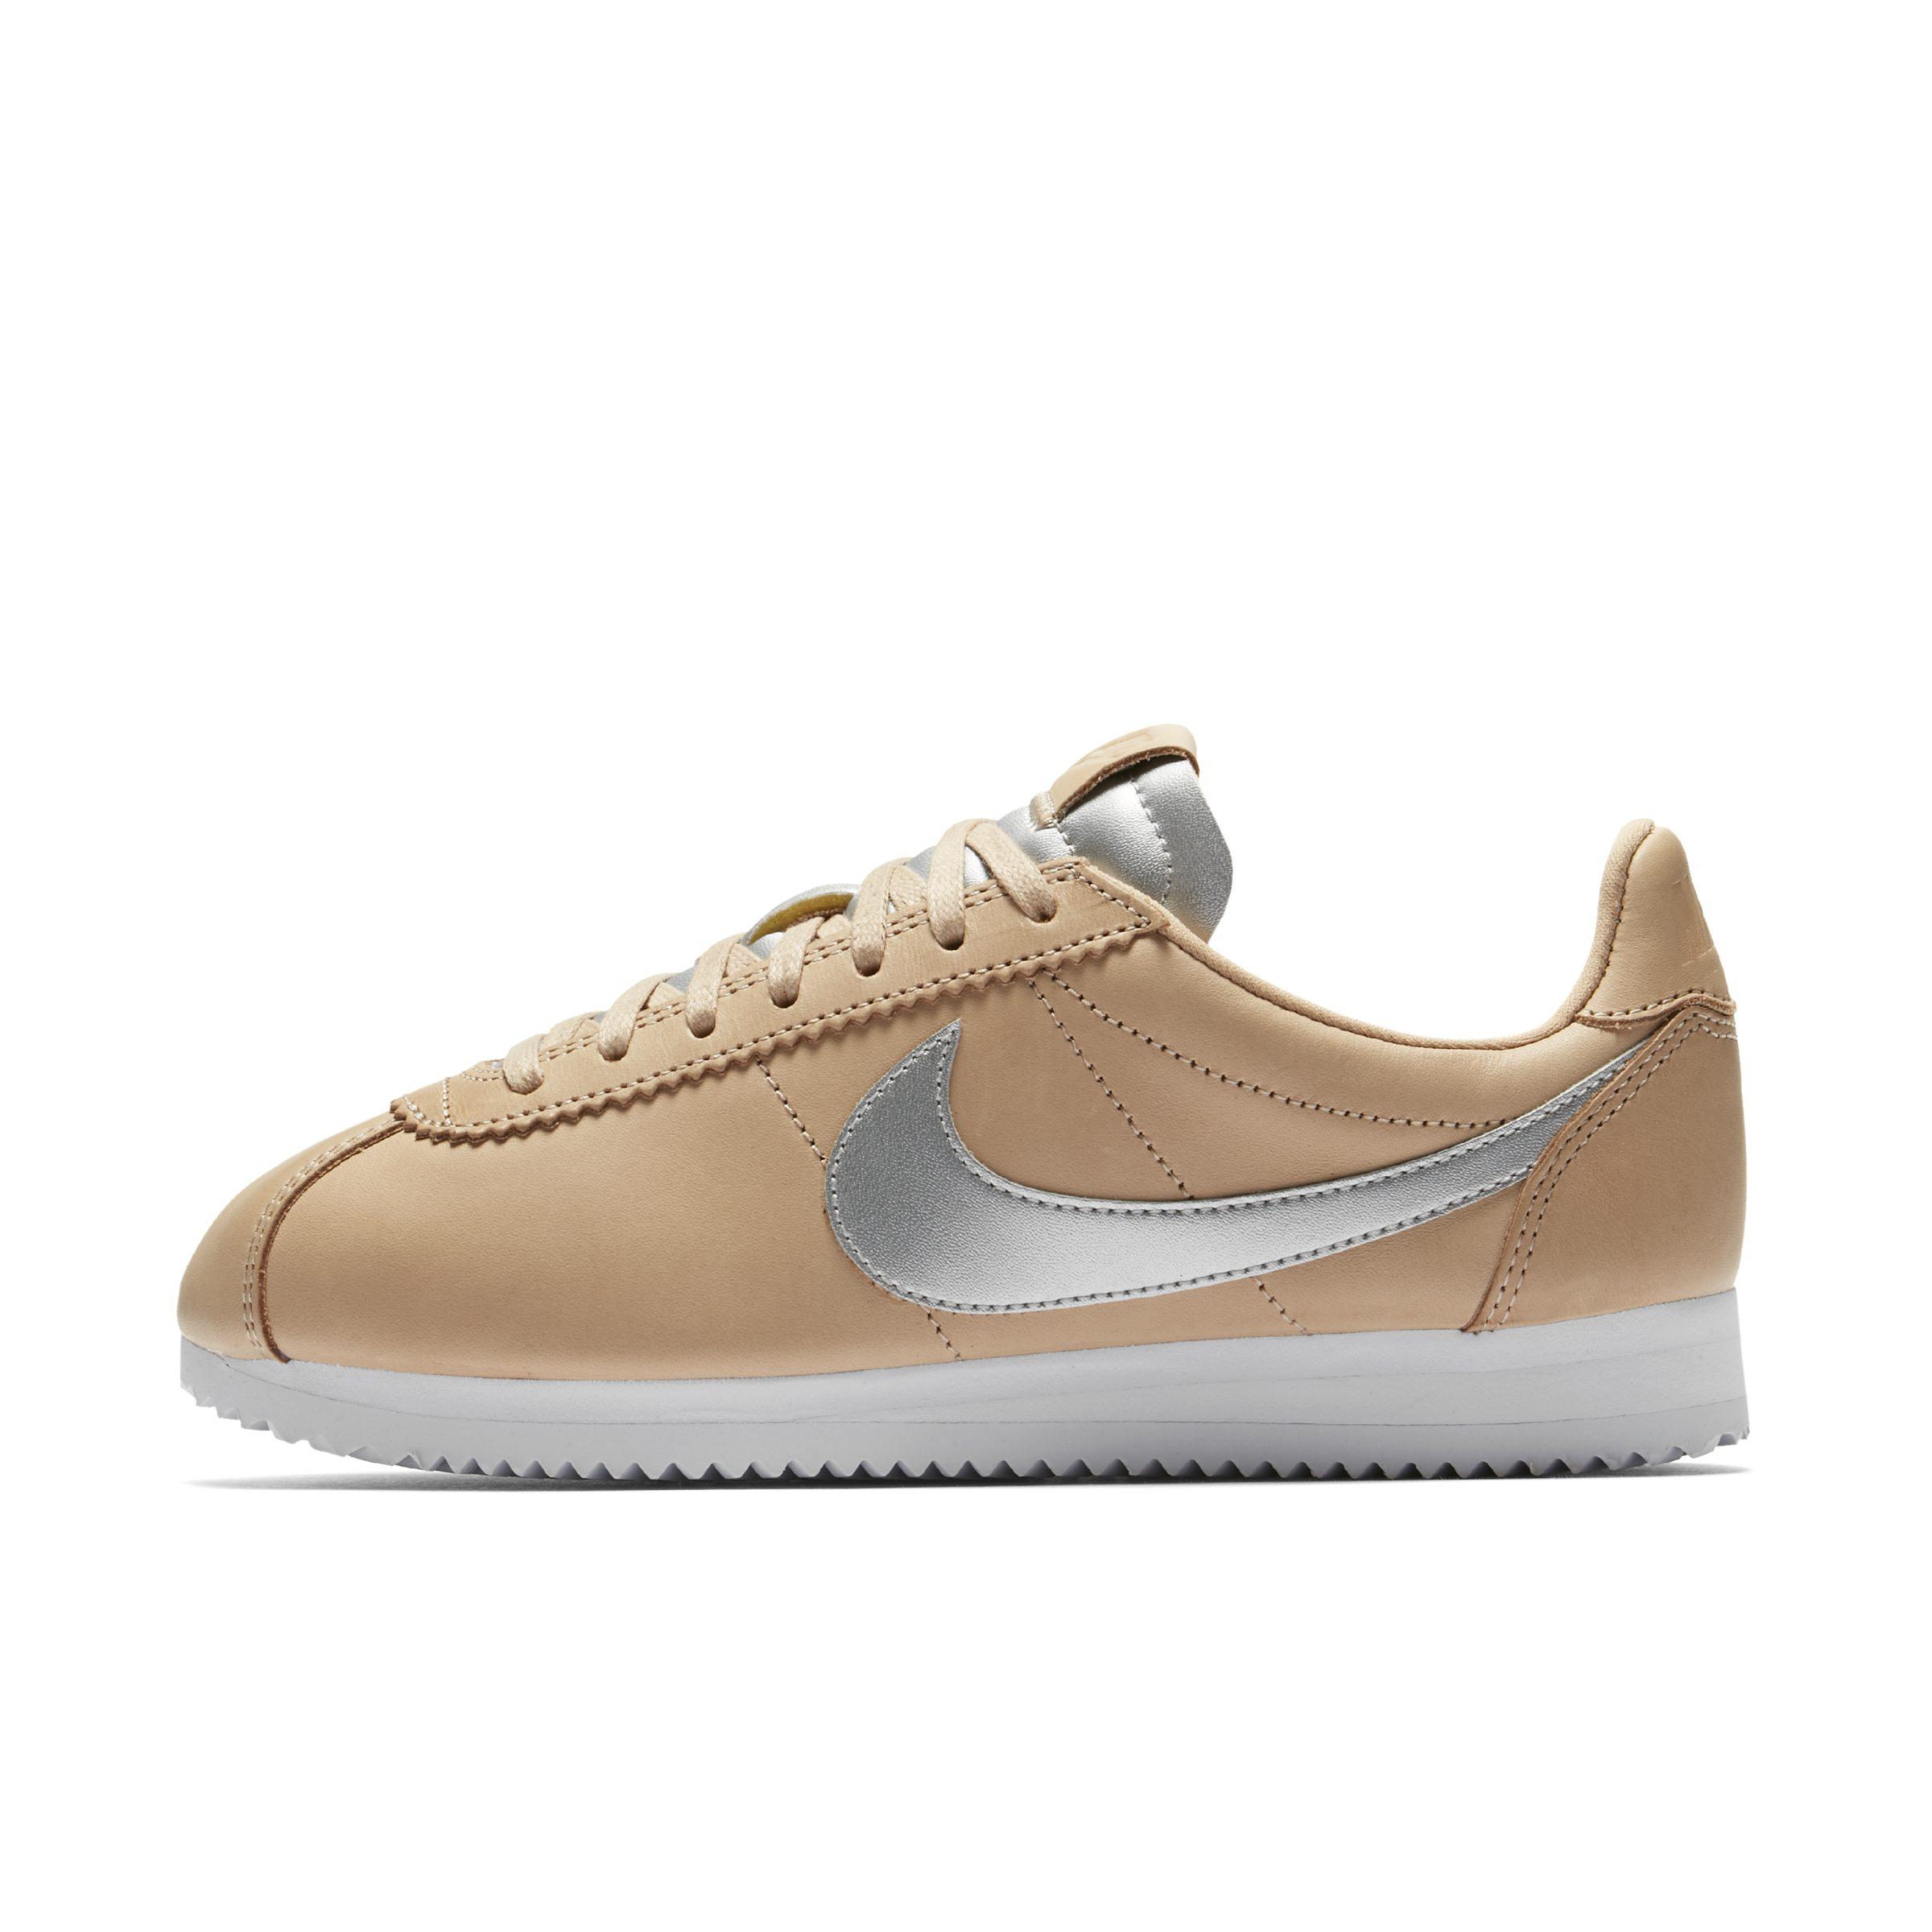 Nike Cortez Nbx Shoe in Brown - Lyst